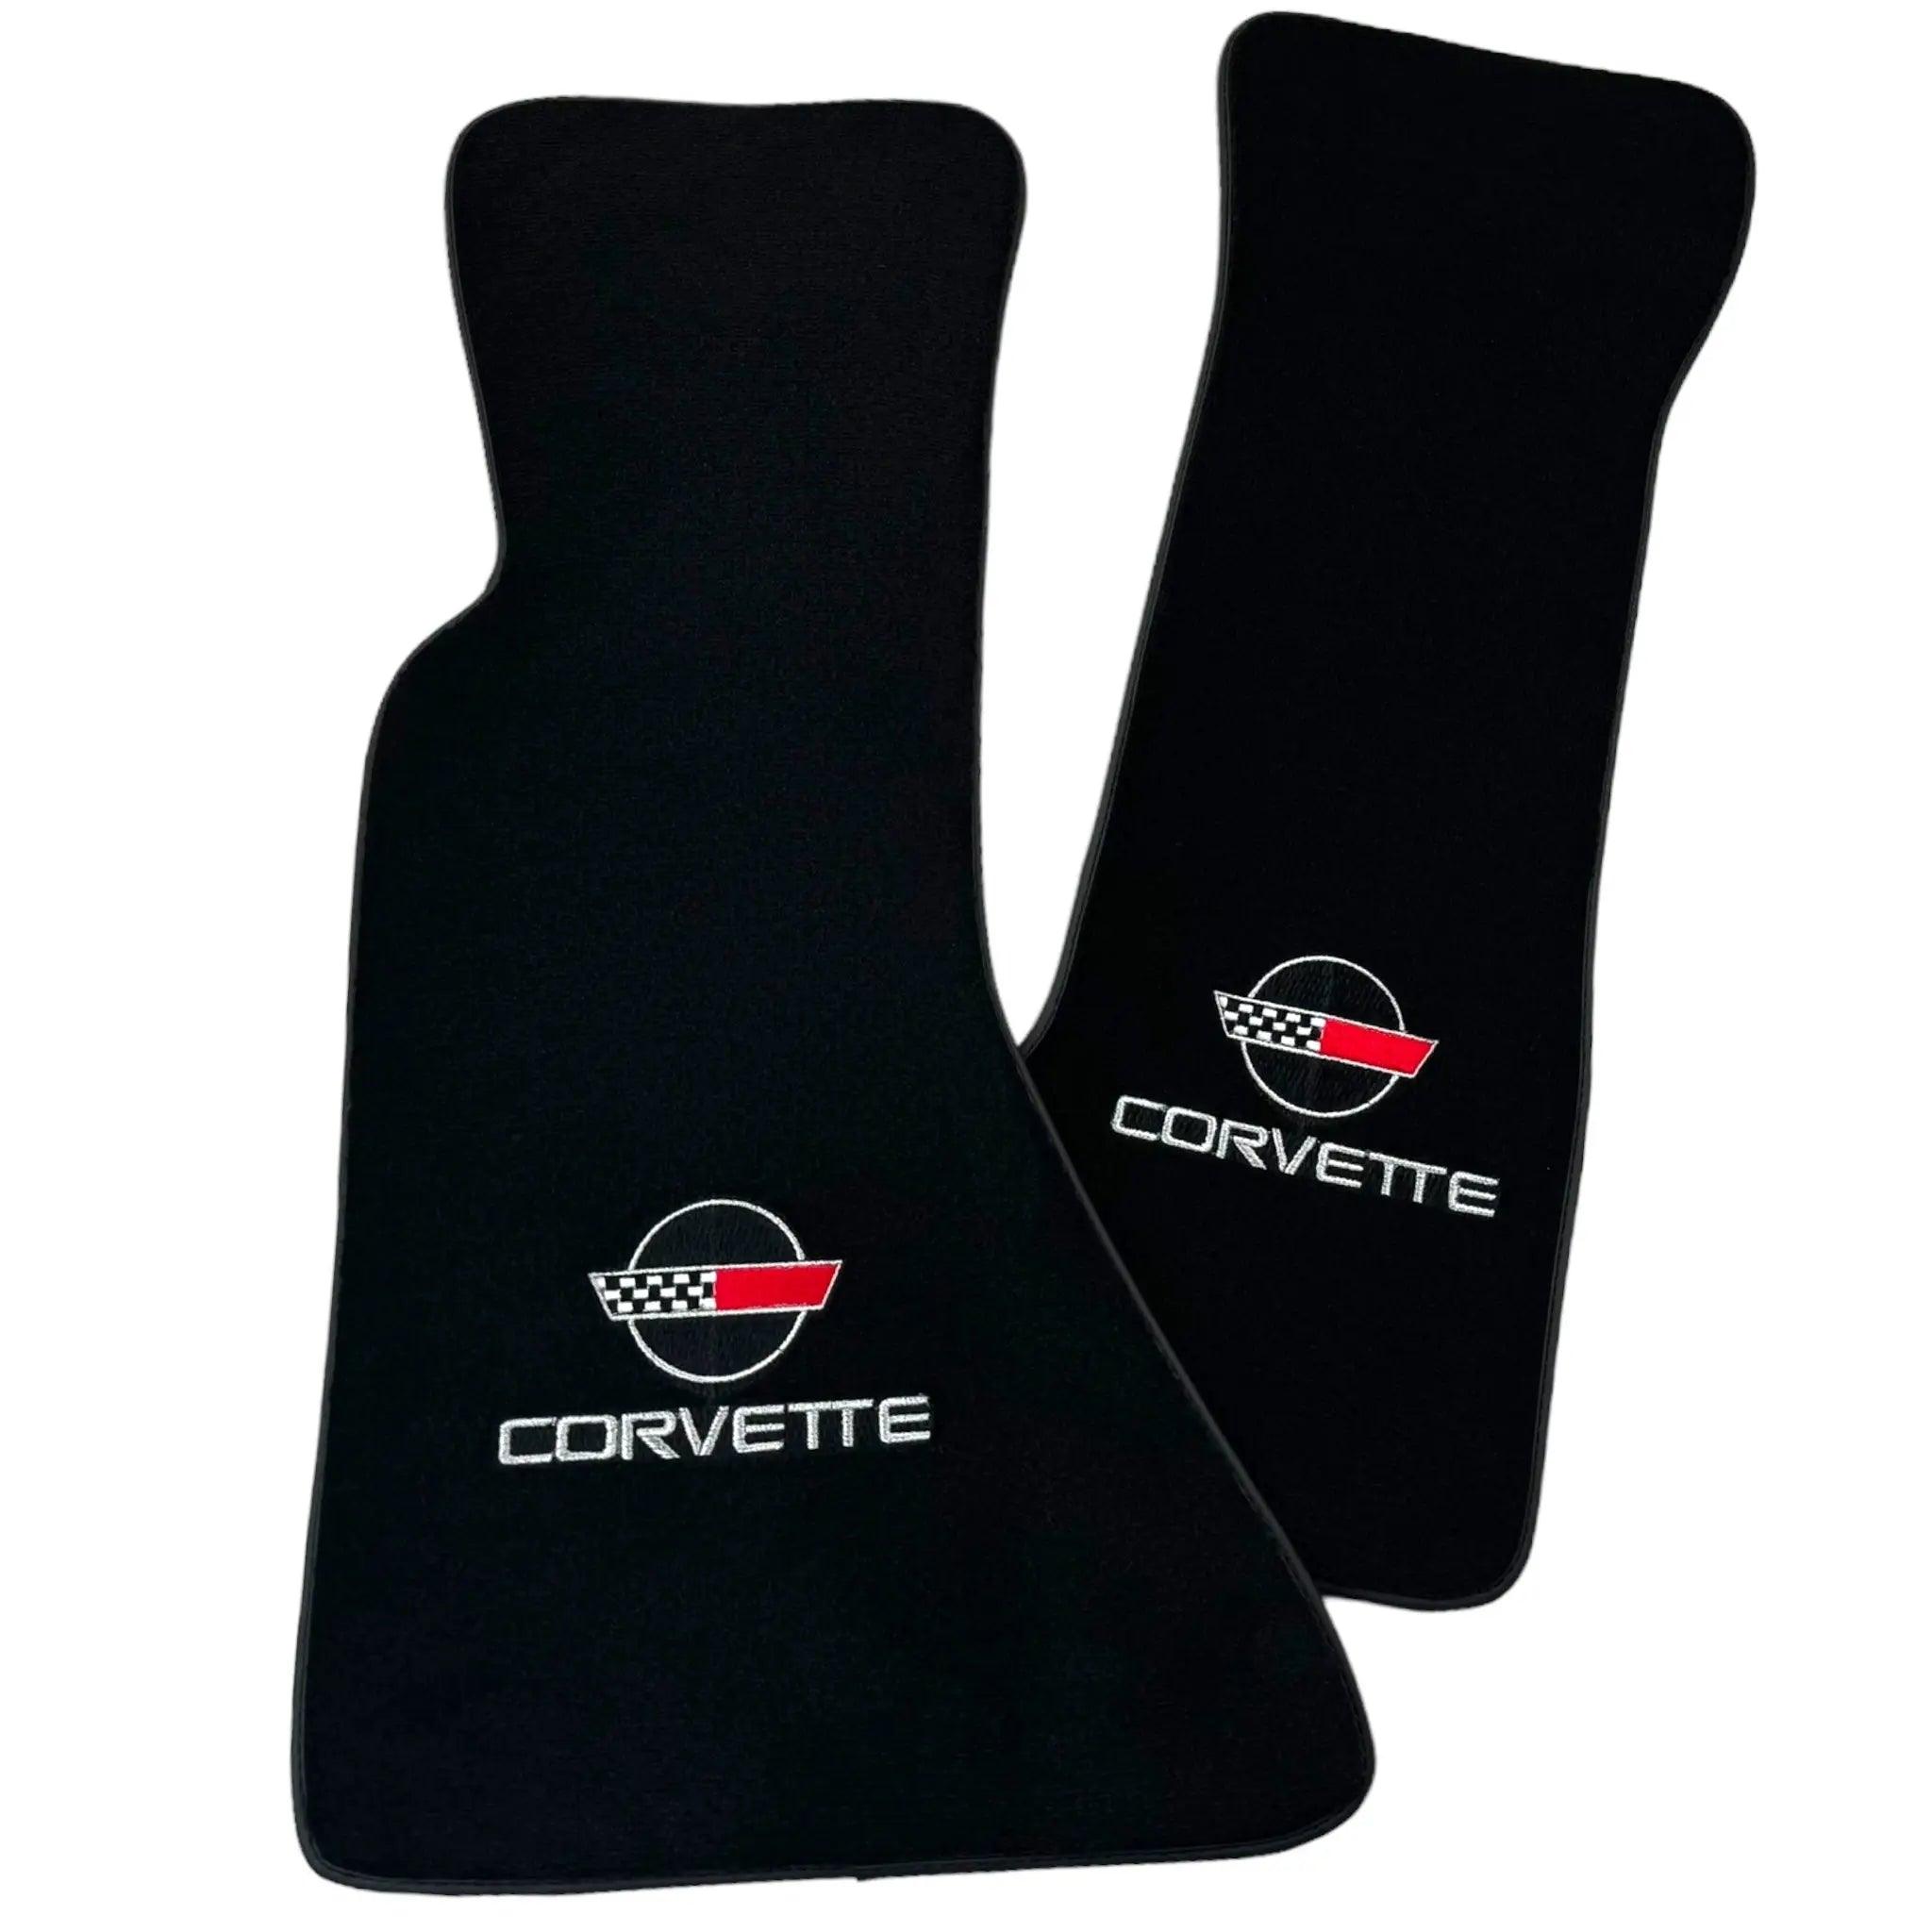 Black Floor Mats for Chevrolet Corvette C4 (1984-1996)